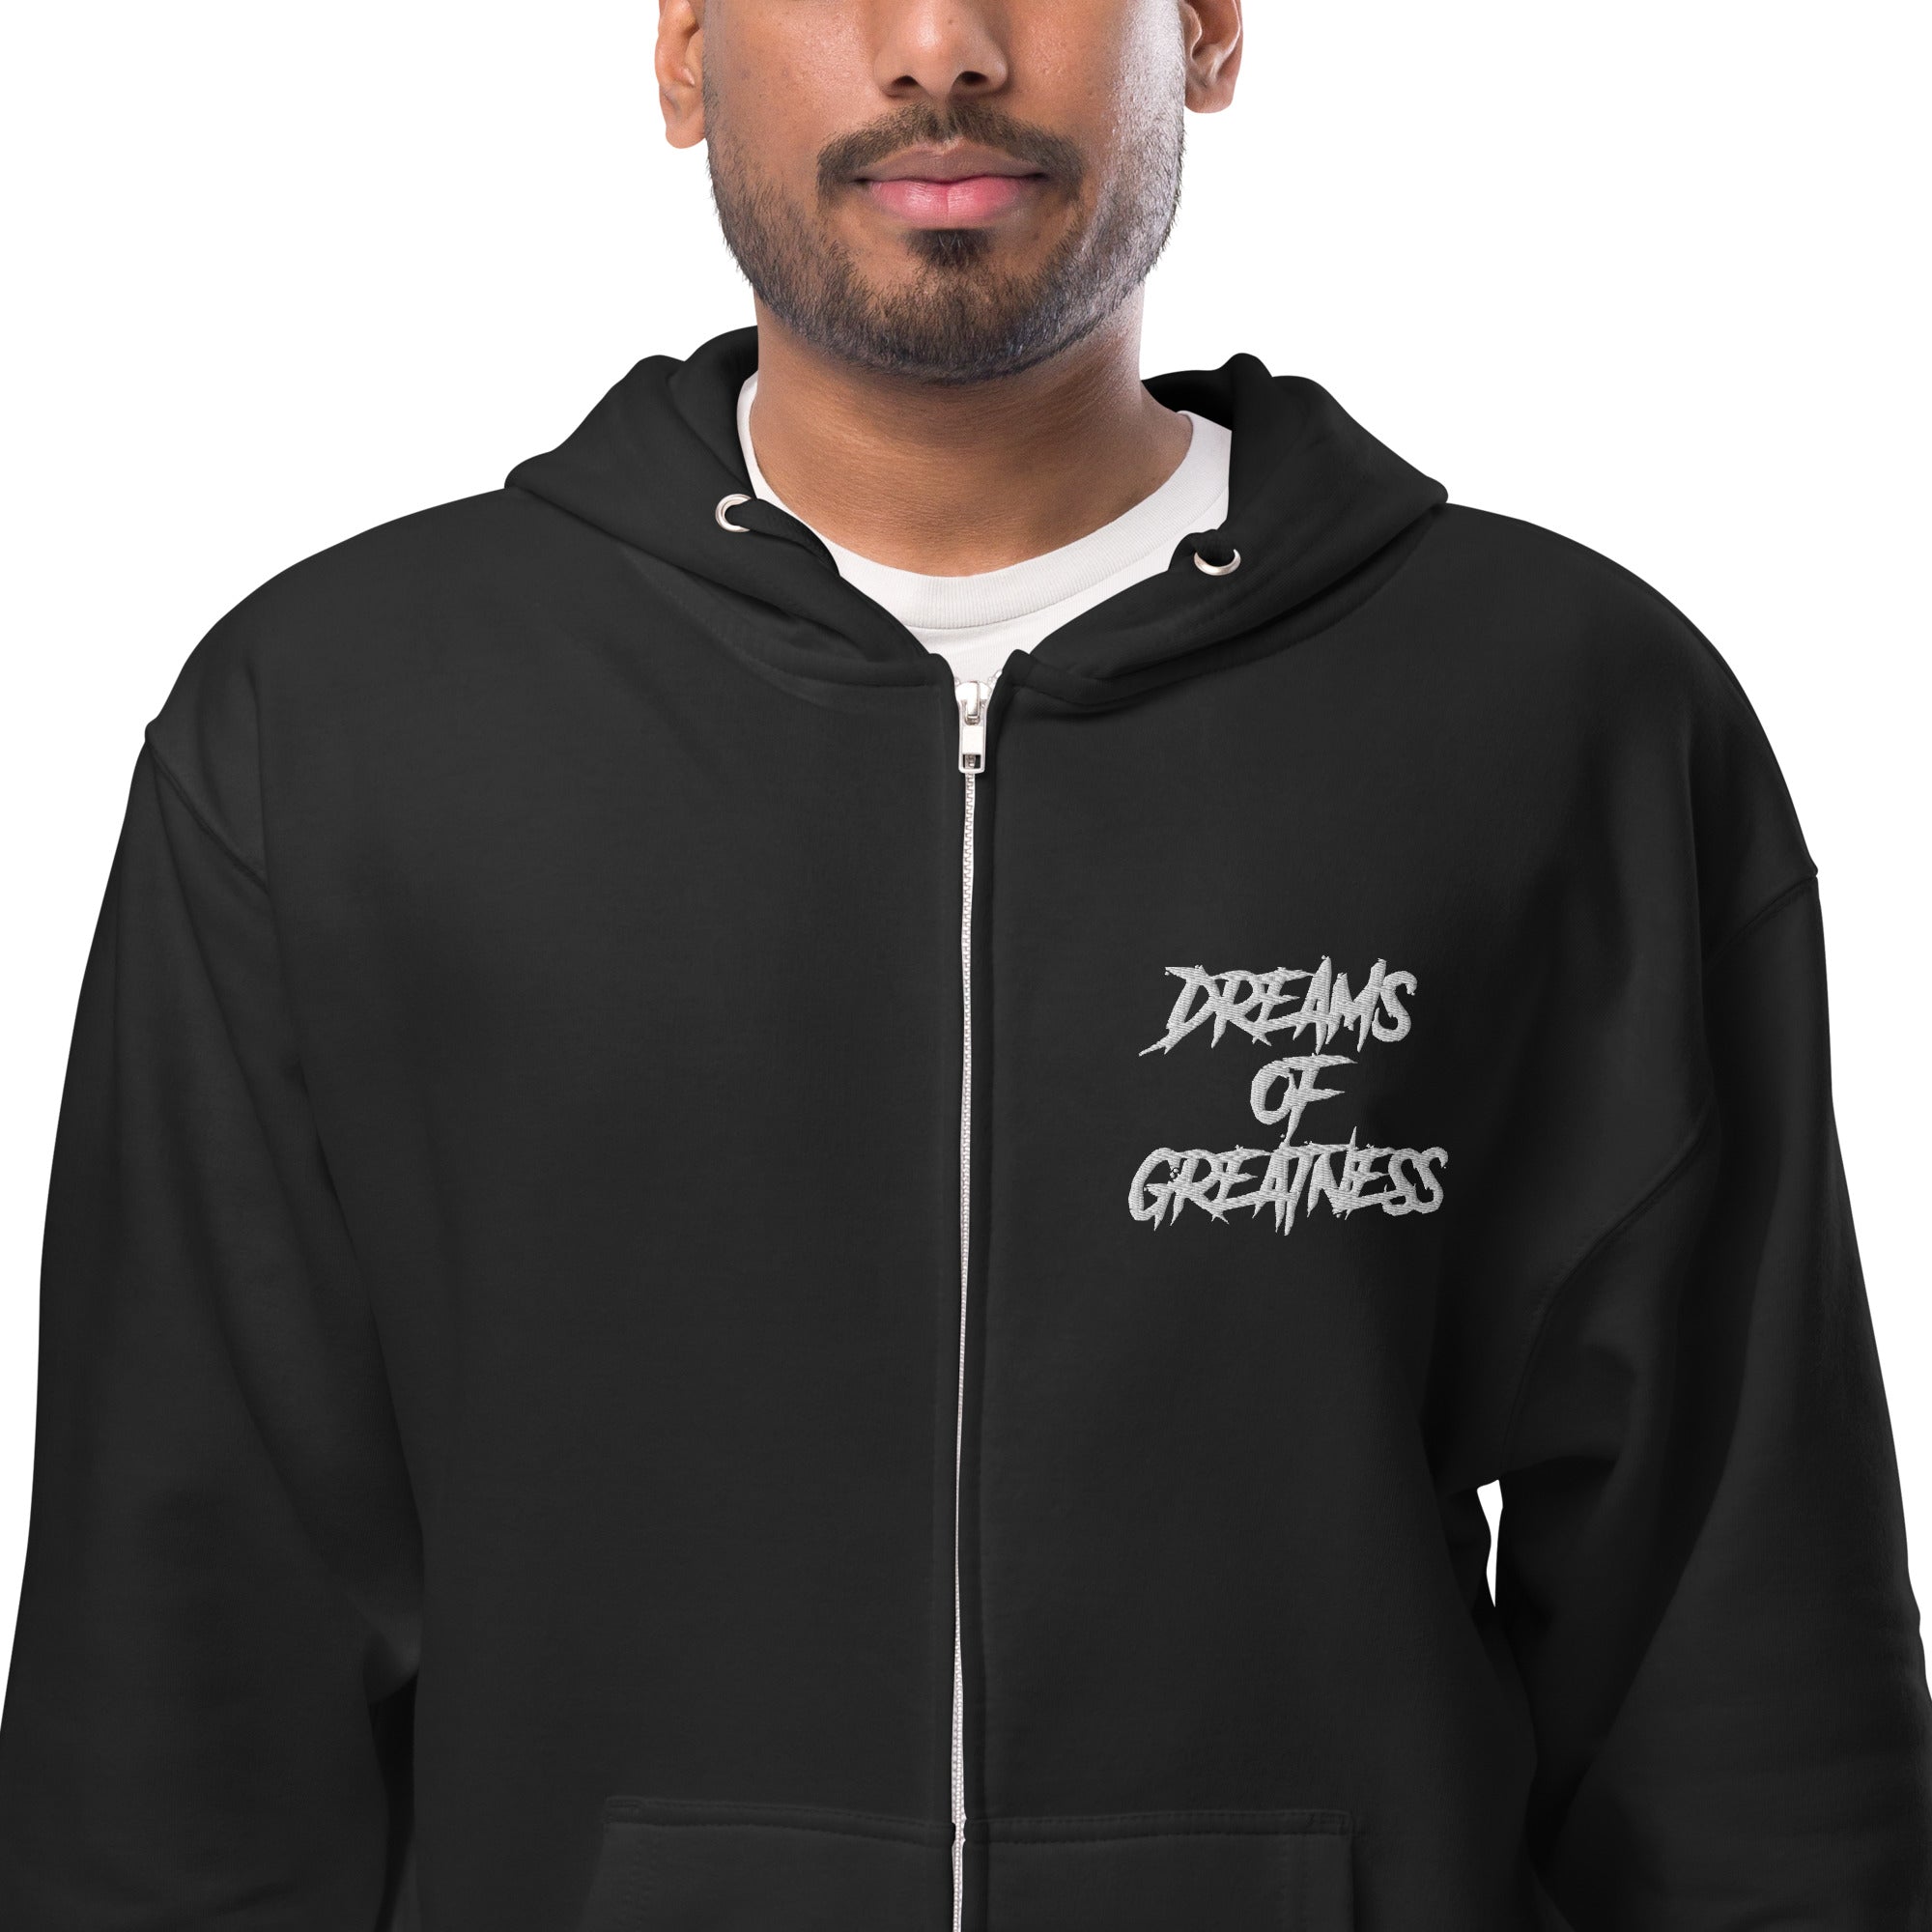 DREAMS OF GREATNESS Paw Print New School Fleece Zip Up Hoodie